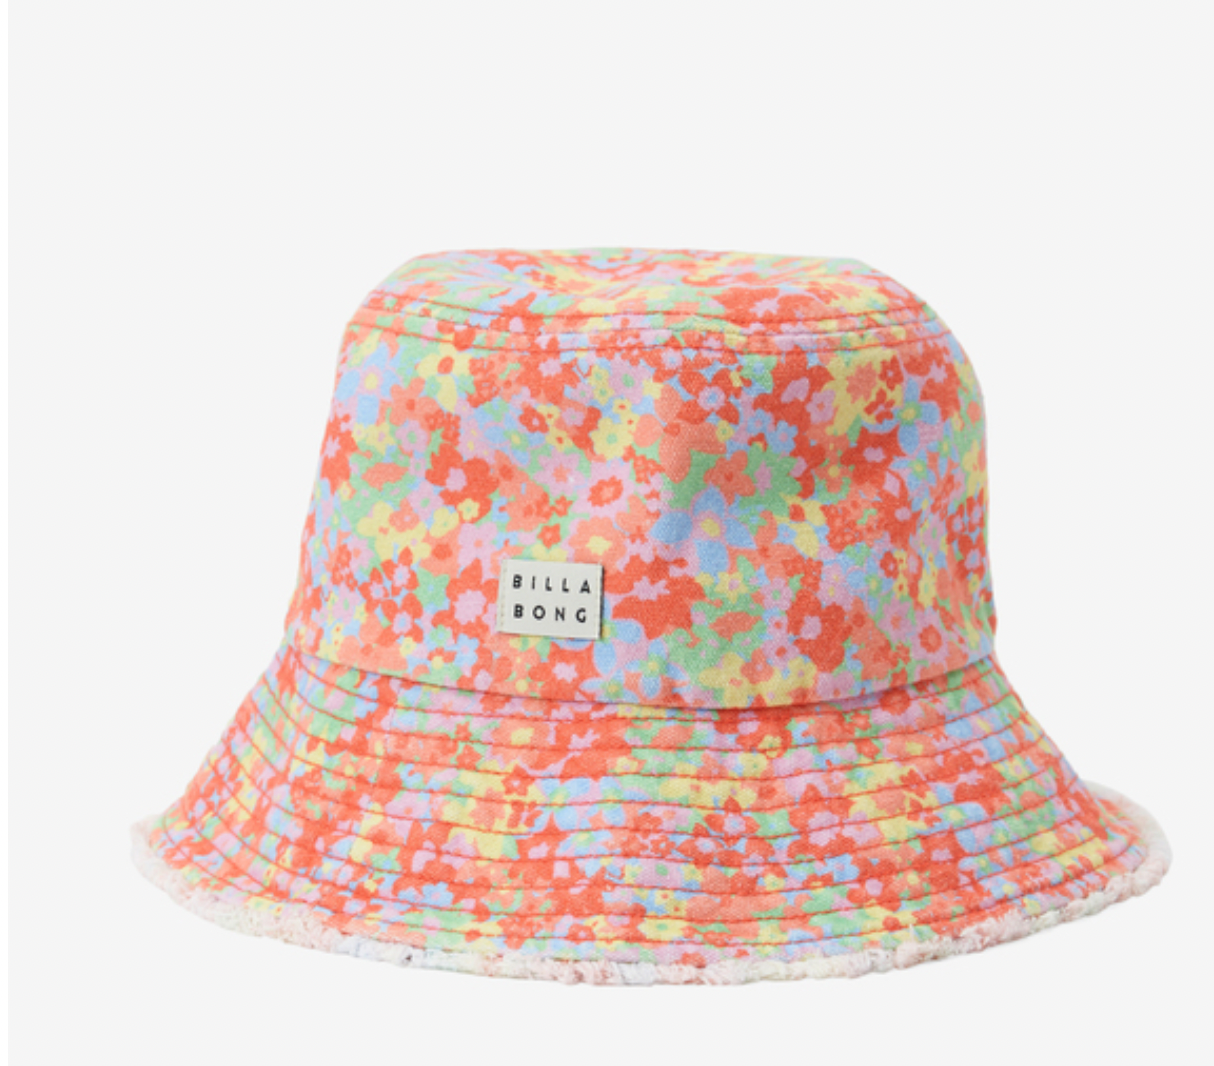 BILLABONG Suns Out - Bucket Hat for Women